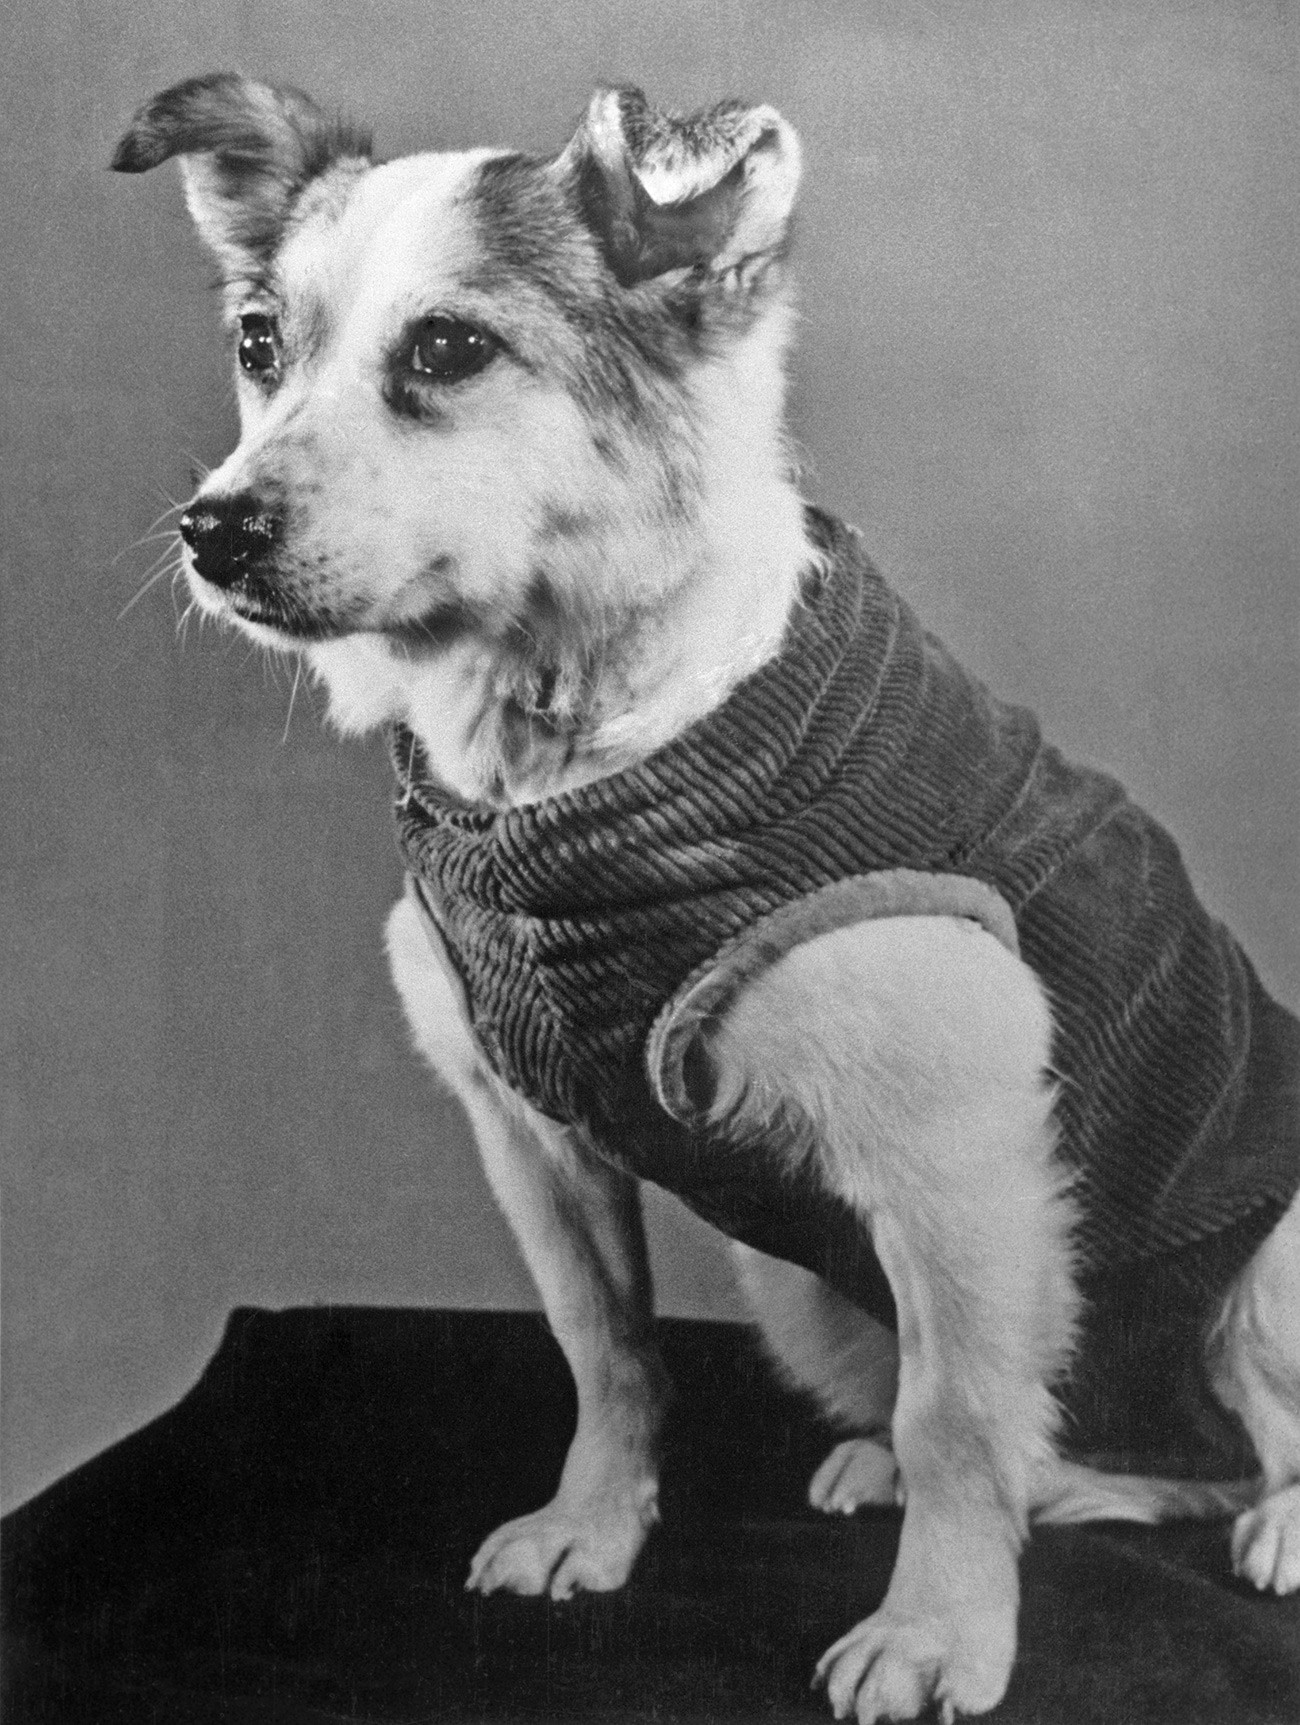 Собака Звездочка, совершившая путешествие на корабле - спутнике и благополучно вернувшаяся на Землю.